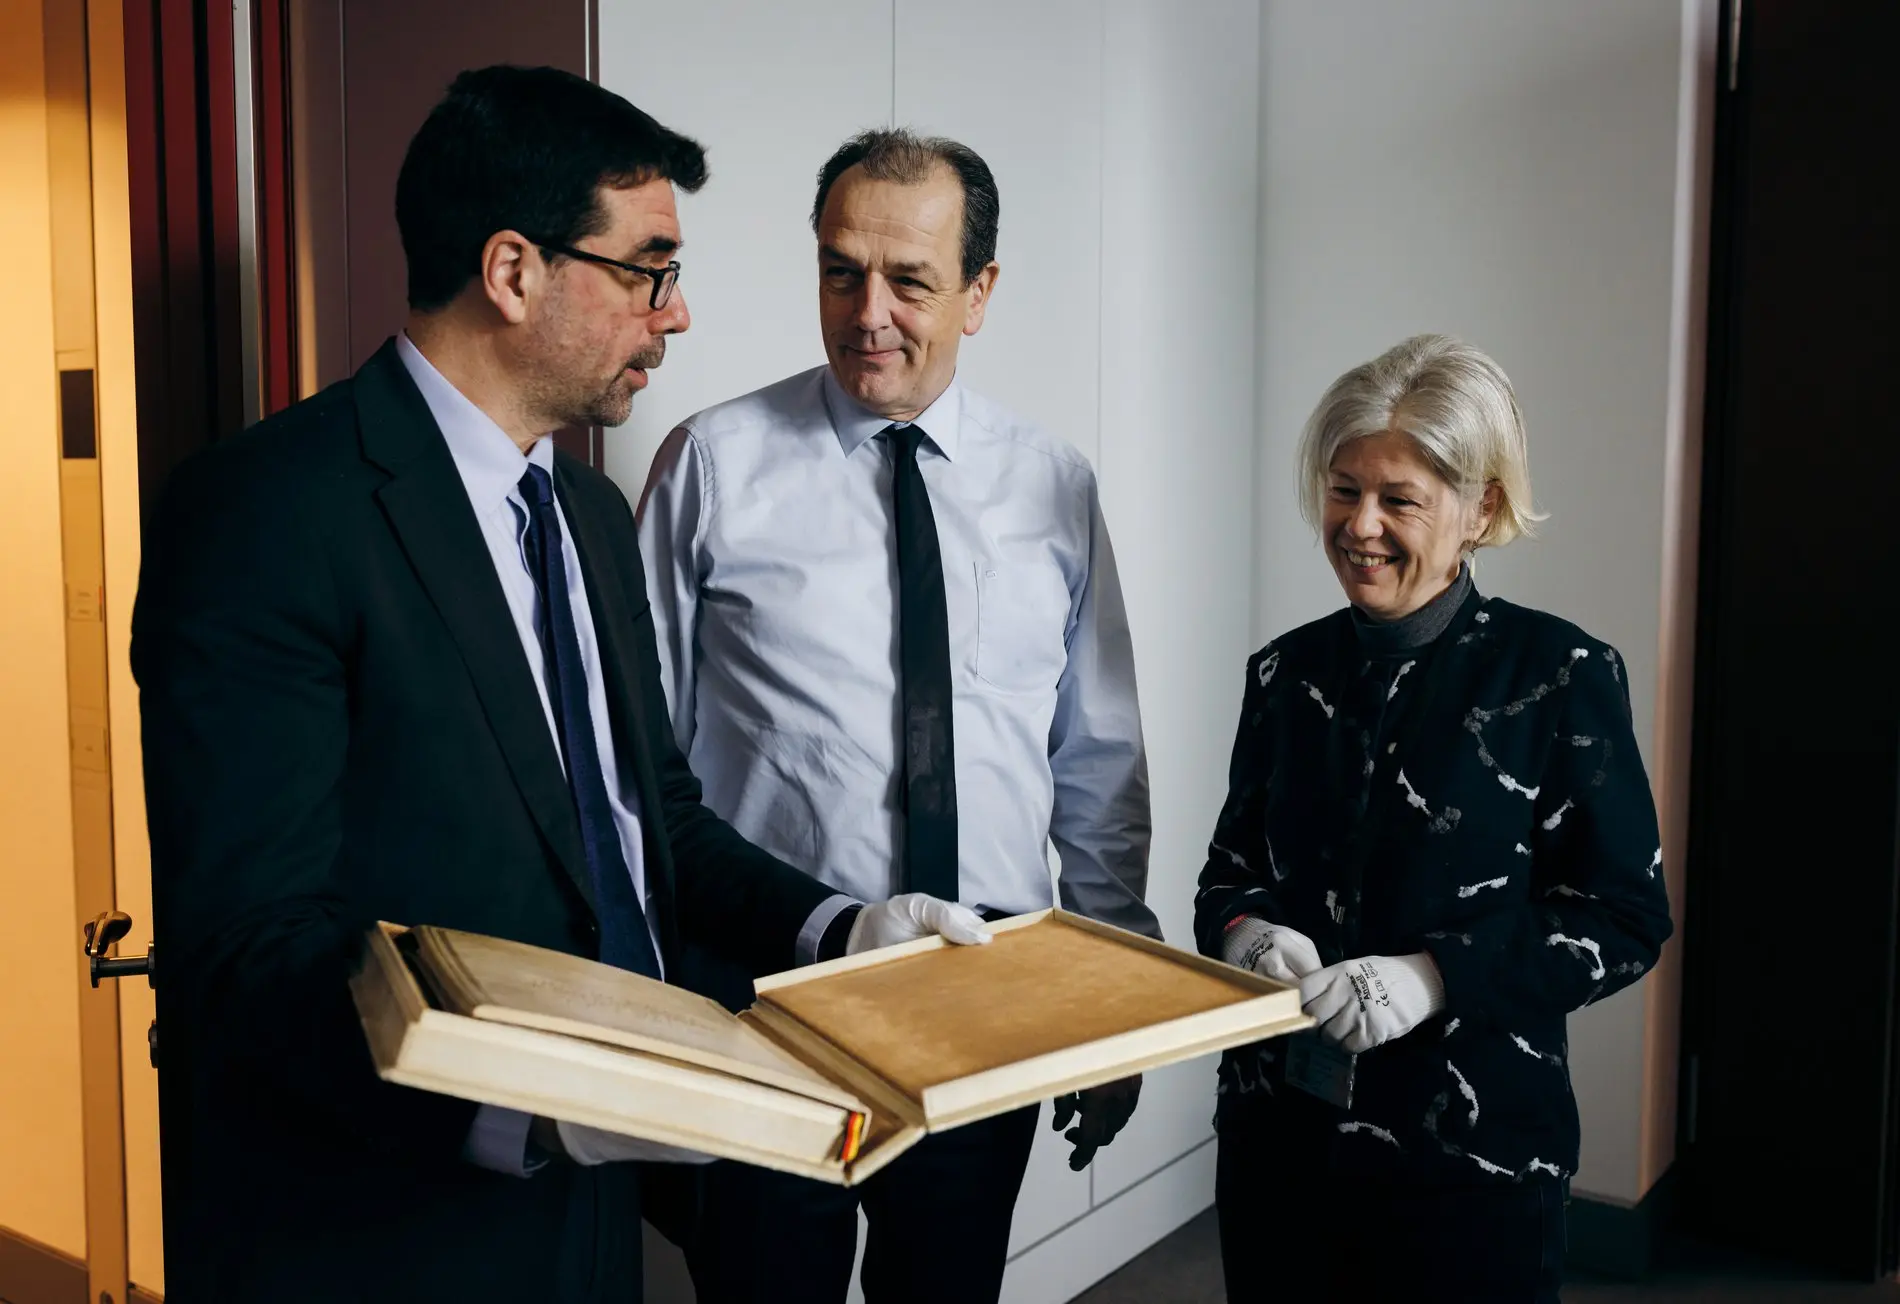 Michael Schäfer, Direktor des Deutschen Bundestages, (mitte) übergibt in seinem Büro die Urschrift des Grundgesetzes an die Parlamentsarchivarin Angela Ullmann (rechts)